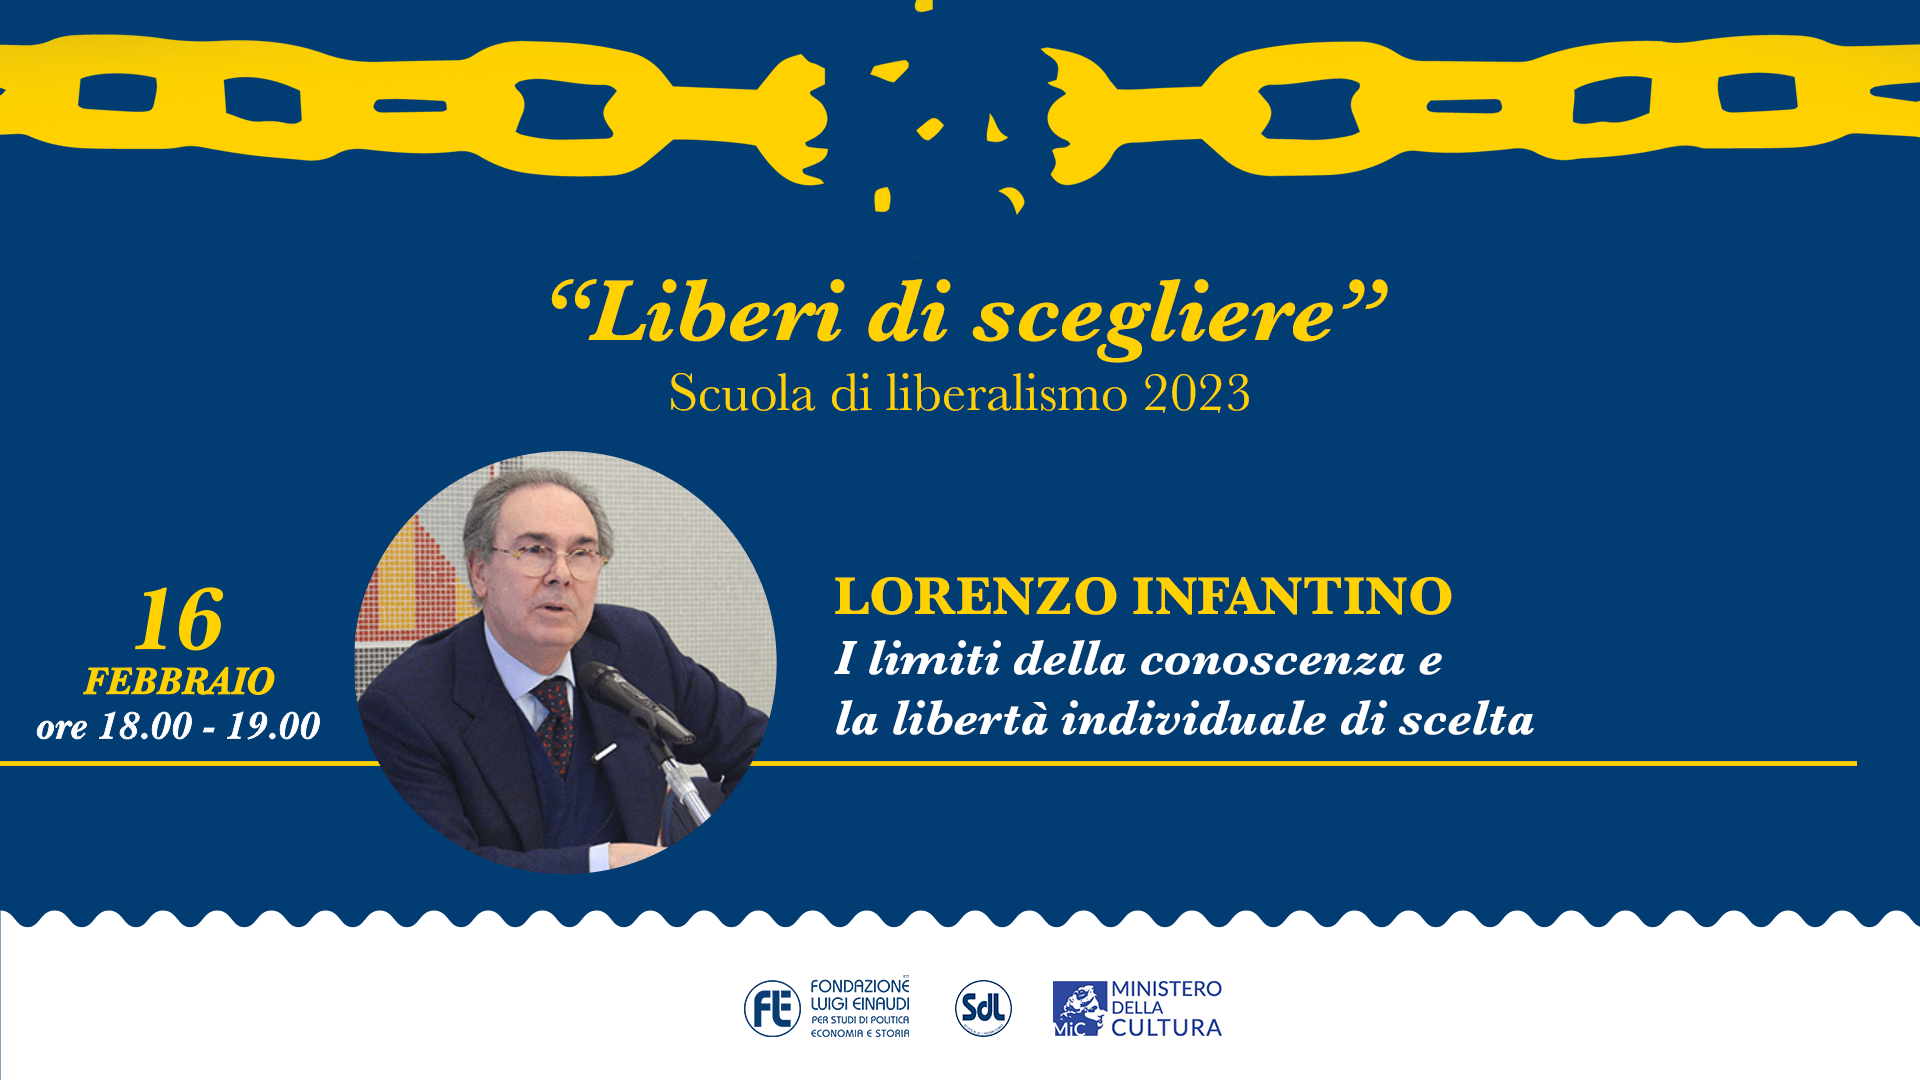 Scuola di Liberalismo 2023 – Lorenzo Infantino, “I limiti della conoscenza e la libertà individuale di scelta”